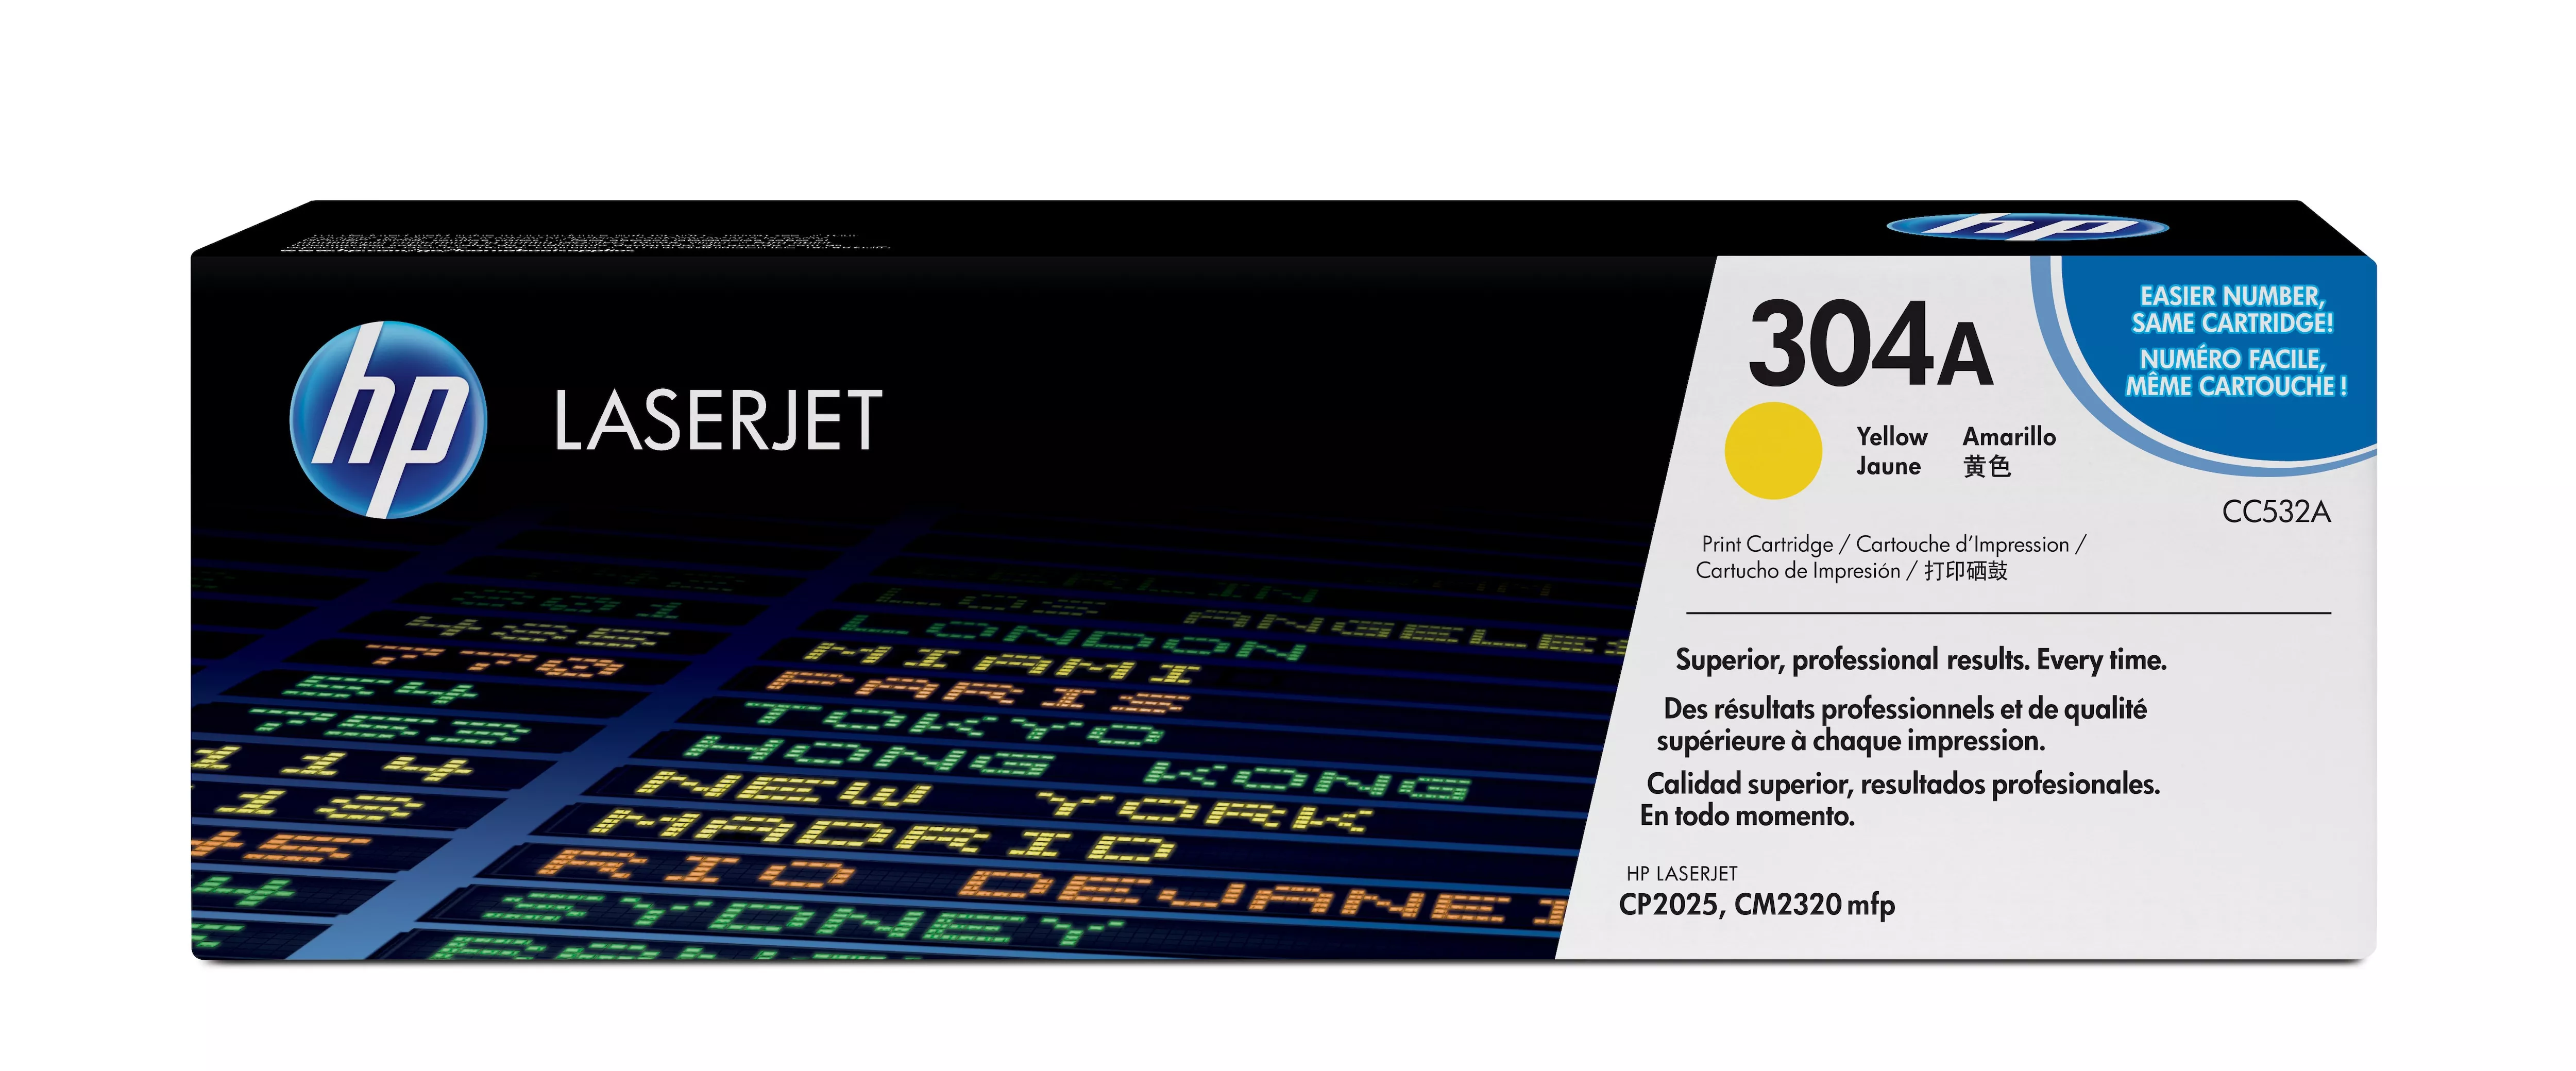 Achat HP 304A original Colour LaserJet Toner cartridge C532A et autres produits de la marque HP